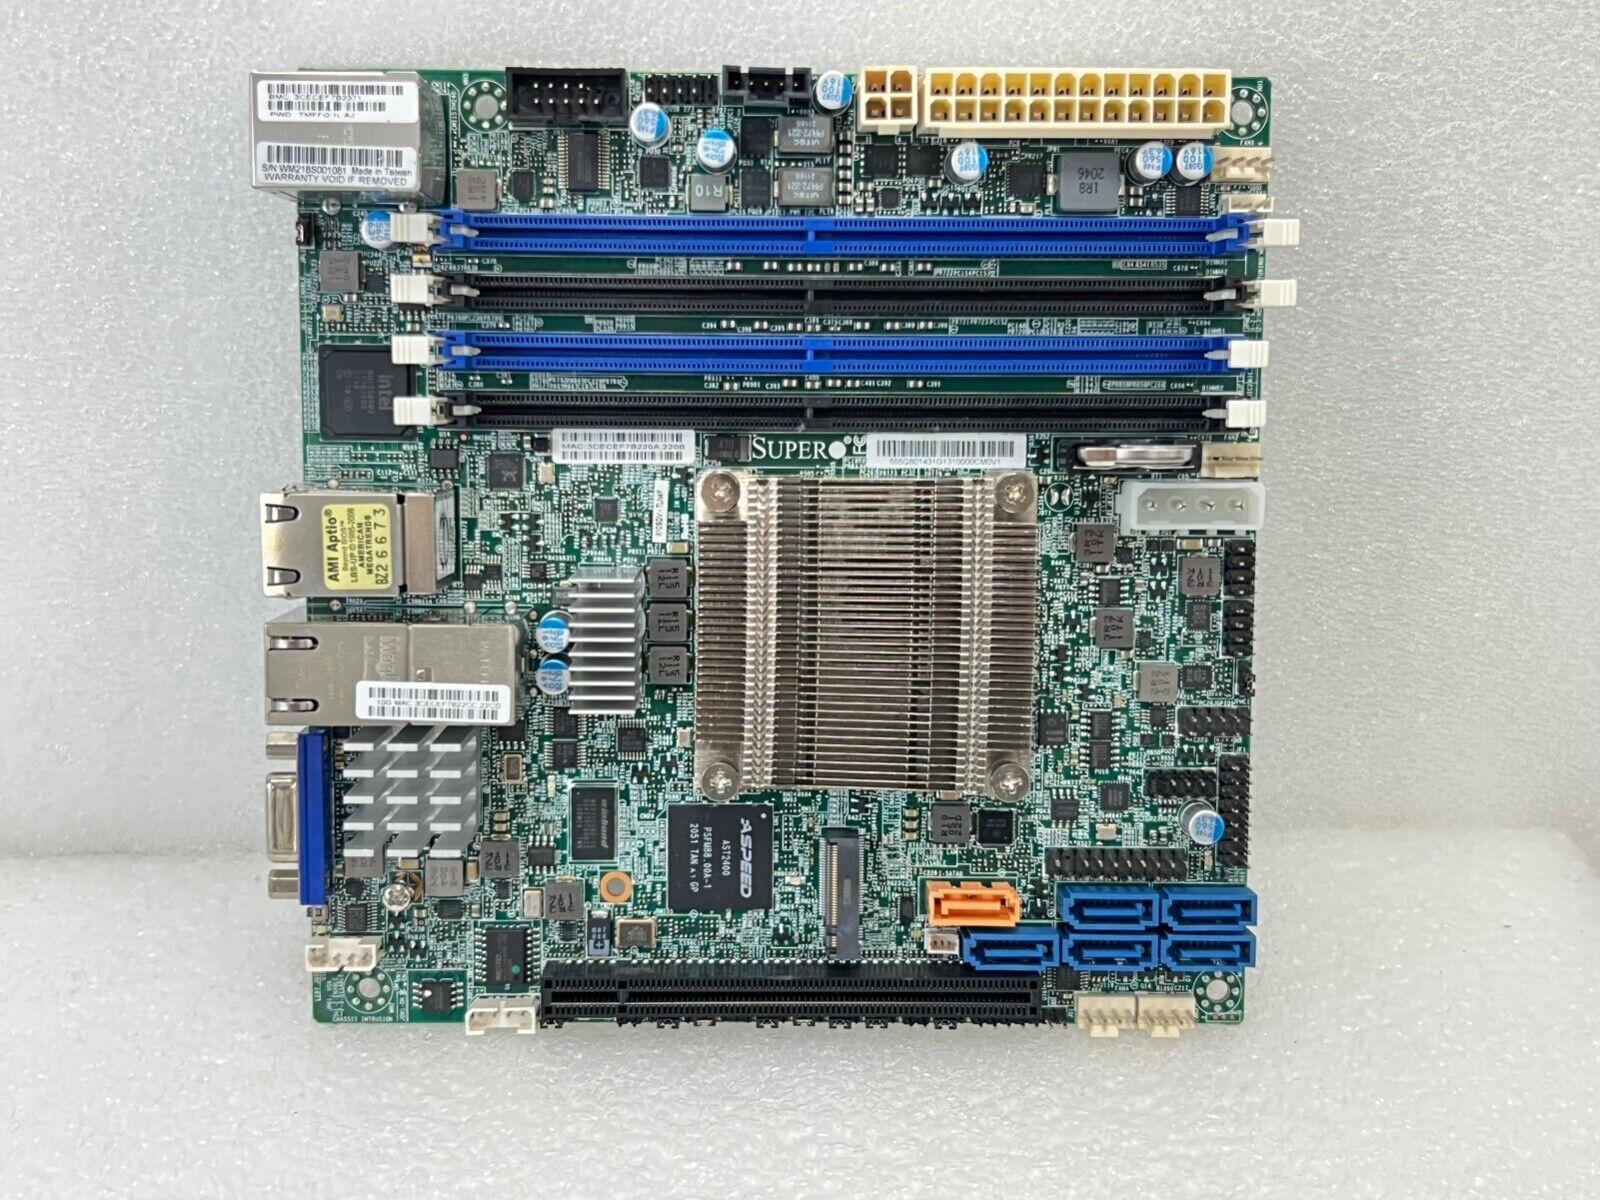 SUPERMICRO X10SDV-TLN4F Mini ITX Server Motherboard No IO Shield Great Condition